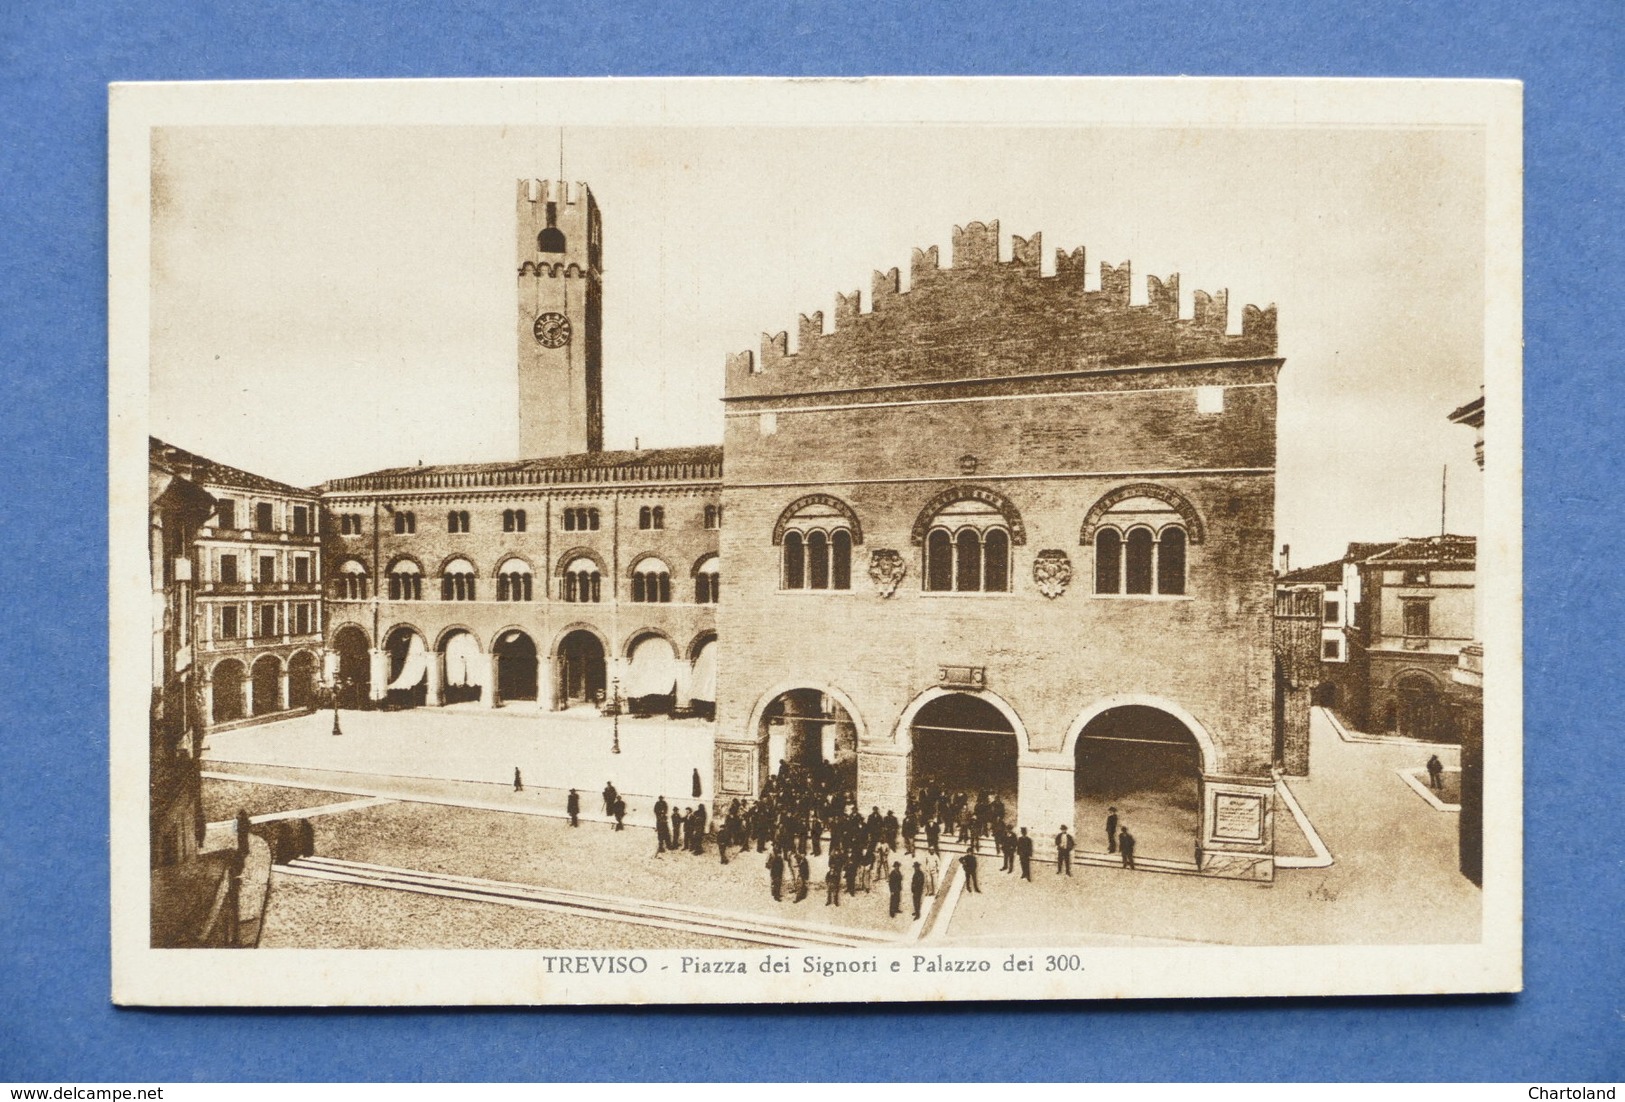 Cartolina Treviso - Piazza Dei Signori E Palazzo Dei 300 - 1920 Ca. - Treviso